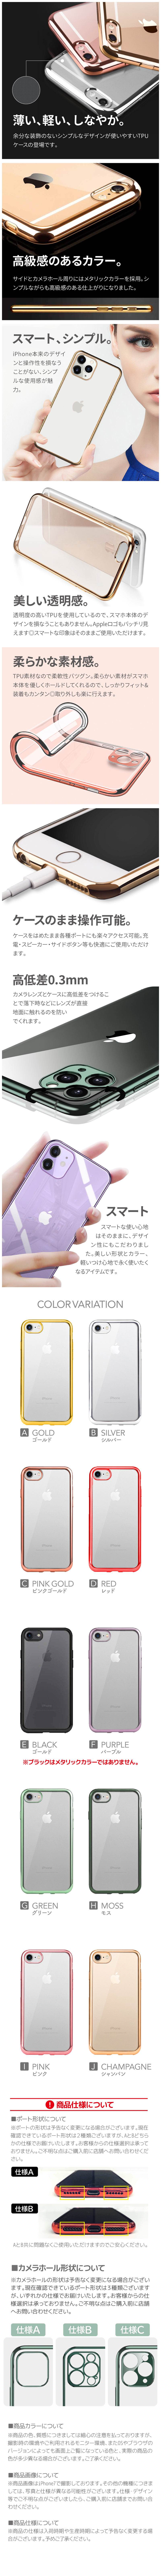 予約販売 iPhone XR ケース iphonexs max ケース カバー iPhone XS iphonex iphone8 iphone7  iphone6 透明 スマホケース スマホカバー シンプル 無地 定番スタイル